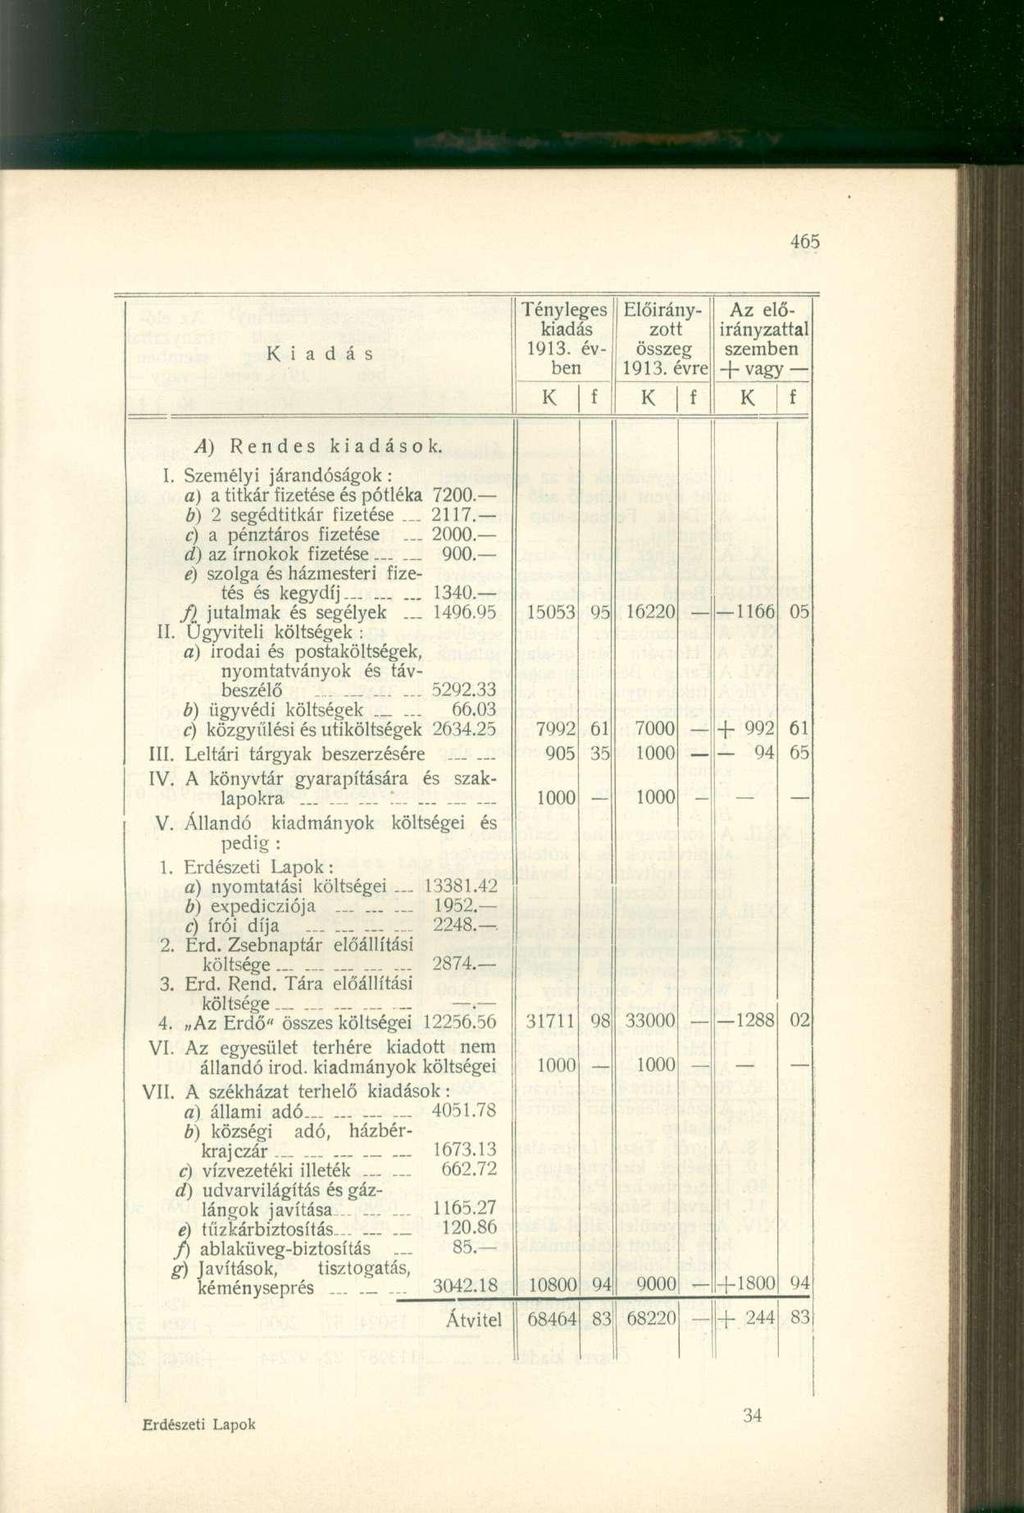 iadás Tényleges kiadás 1913. évben Előirányzott összeg 1913. évre Az előirányzattal szemben + vagy- A) Rendes kiadások. I. Személyi járandóságok: a) a titkár izetése és pótléka 7200.